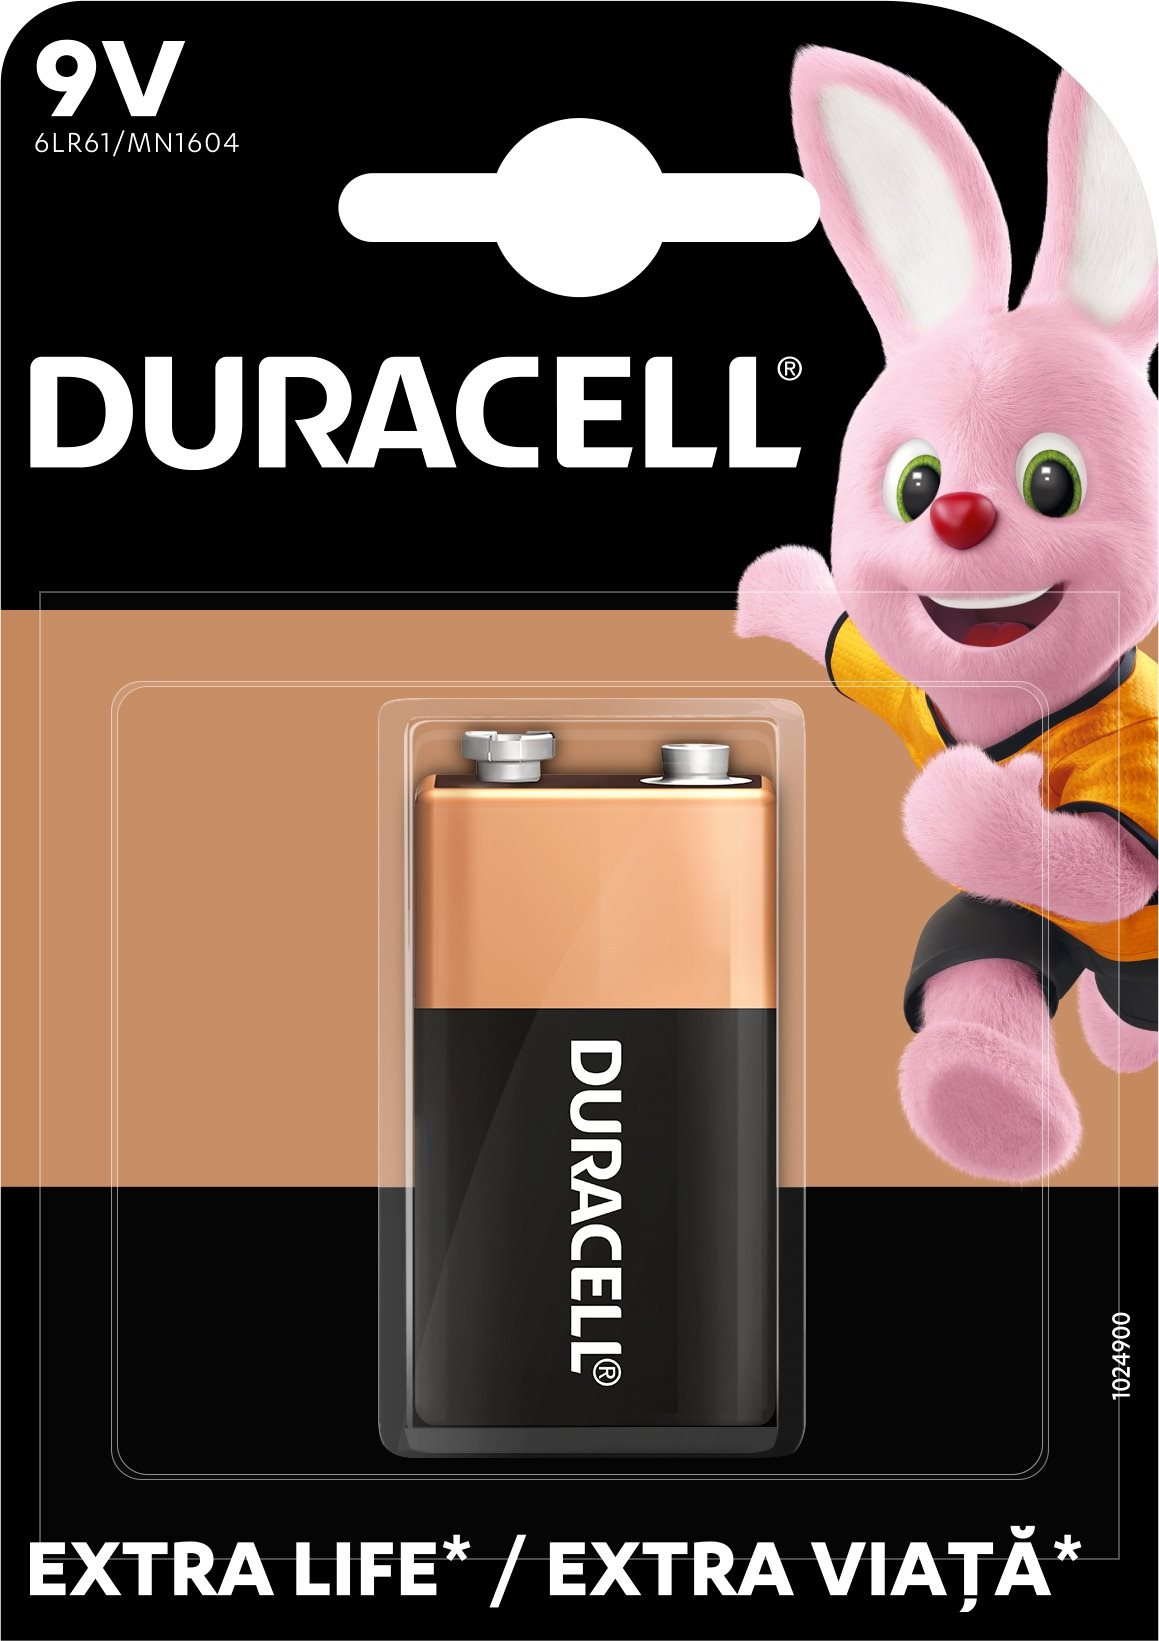 Duracell Basic 1604 K1